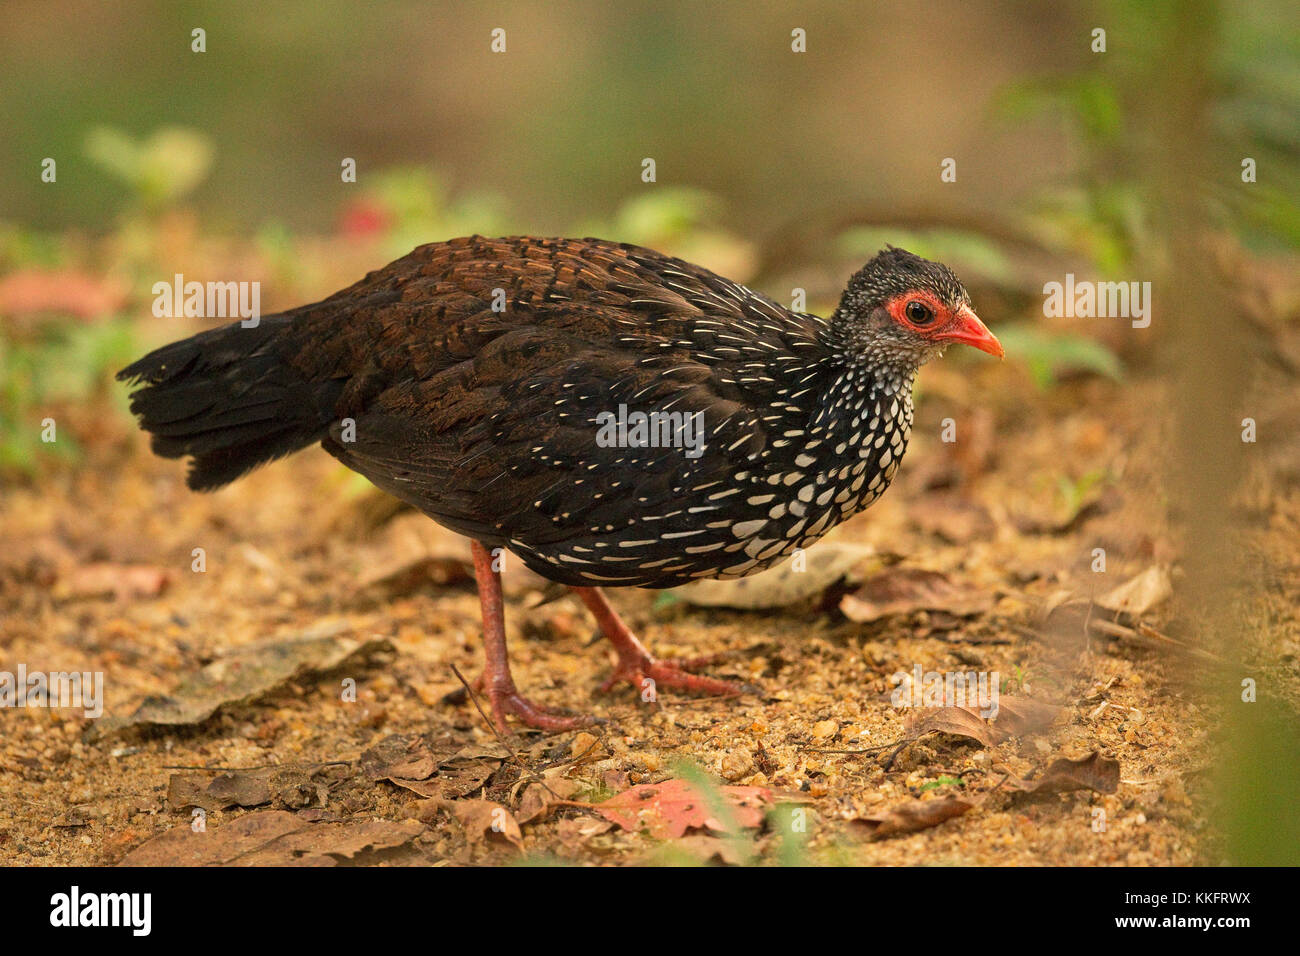 Sri Lanka Spurfowl (Galloperdix bicalcarata) Stock Photo